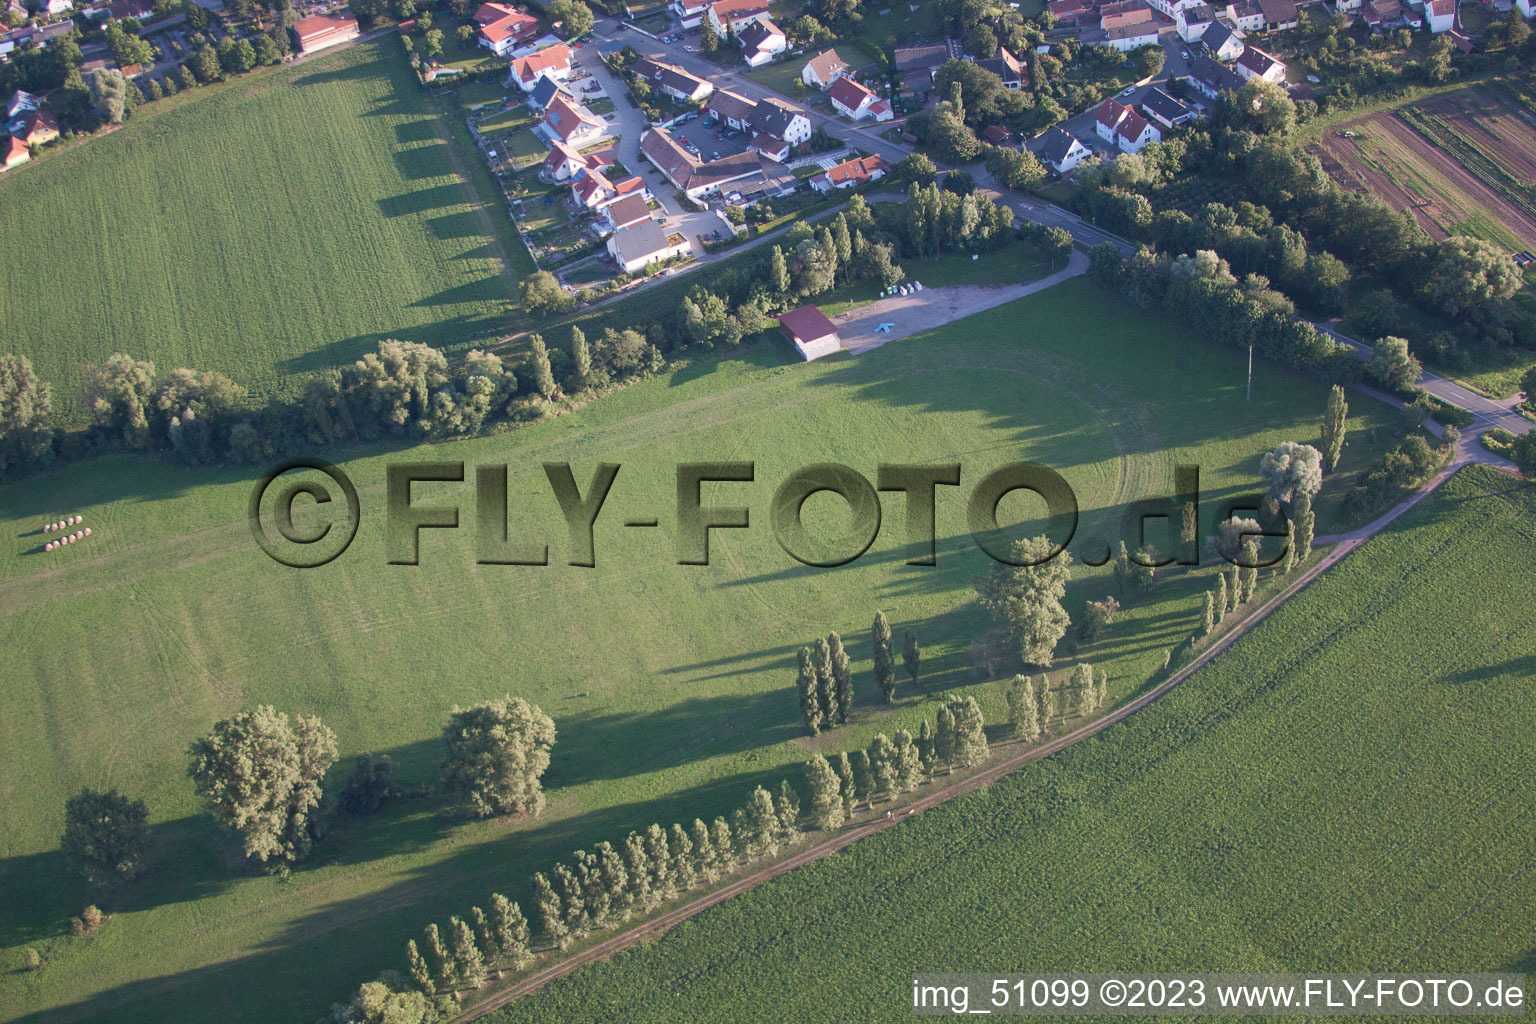 District Billigheim in Billigheim-Ingenheim in the state Rhineland-Palatinate, Germany from above